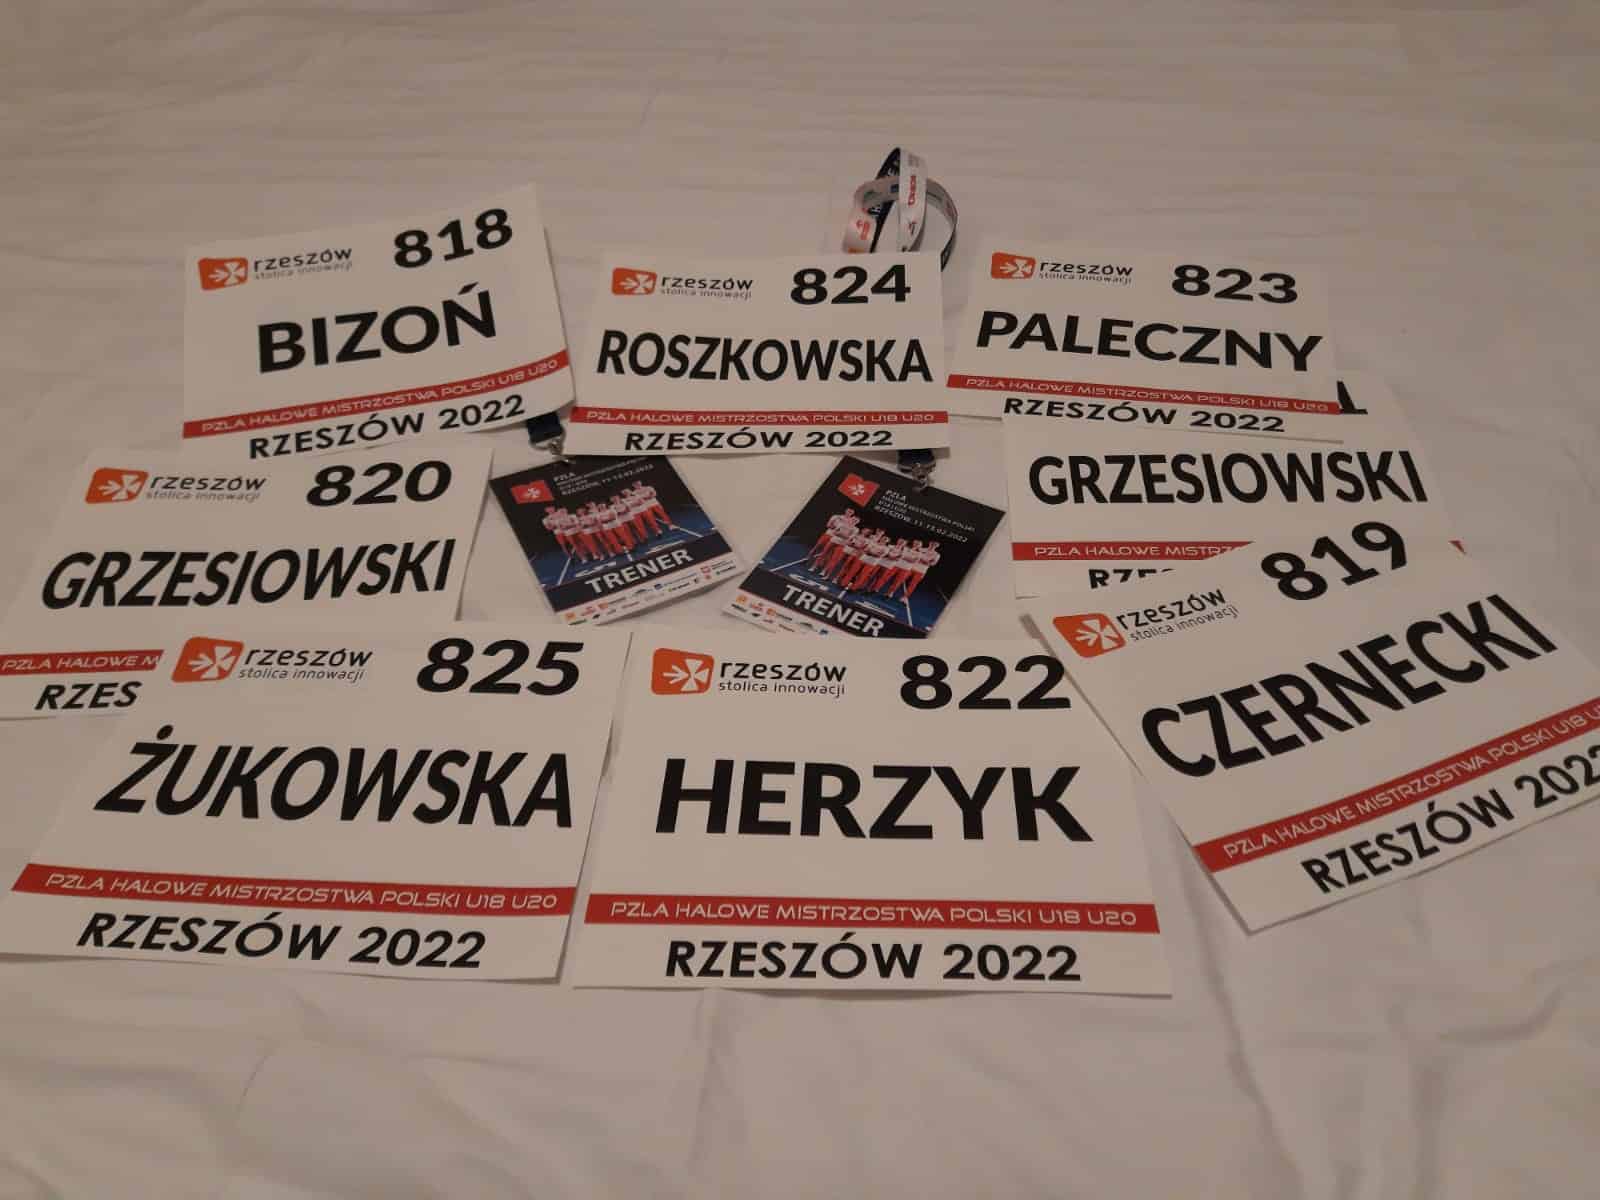 11-13.02.2022r. – Halowe Mistrzostwa Polski U18 i 20 – Rzeszów